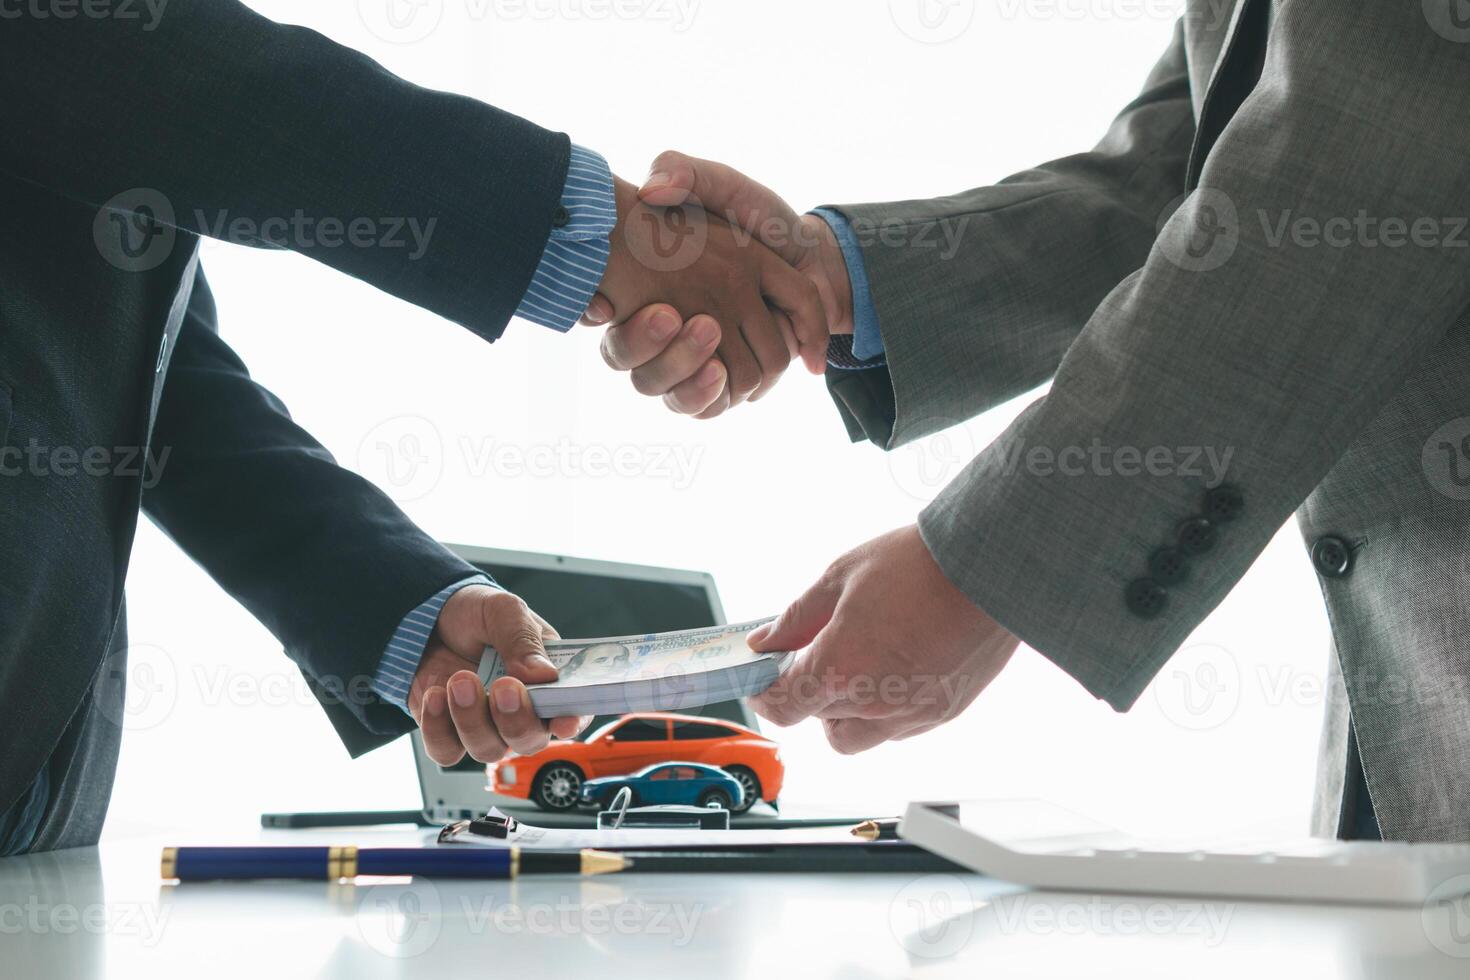 klant en auto handelaar schudden handen na akkoord gaan naar verkoop contract voordat maken contract betaling en overhandigen over- auto sleutels naar klant. concept van handdruk tussen klanten en auto handelaars. foto